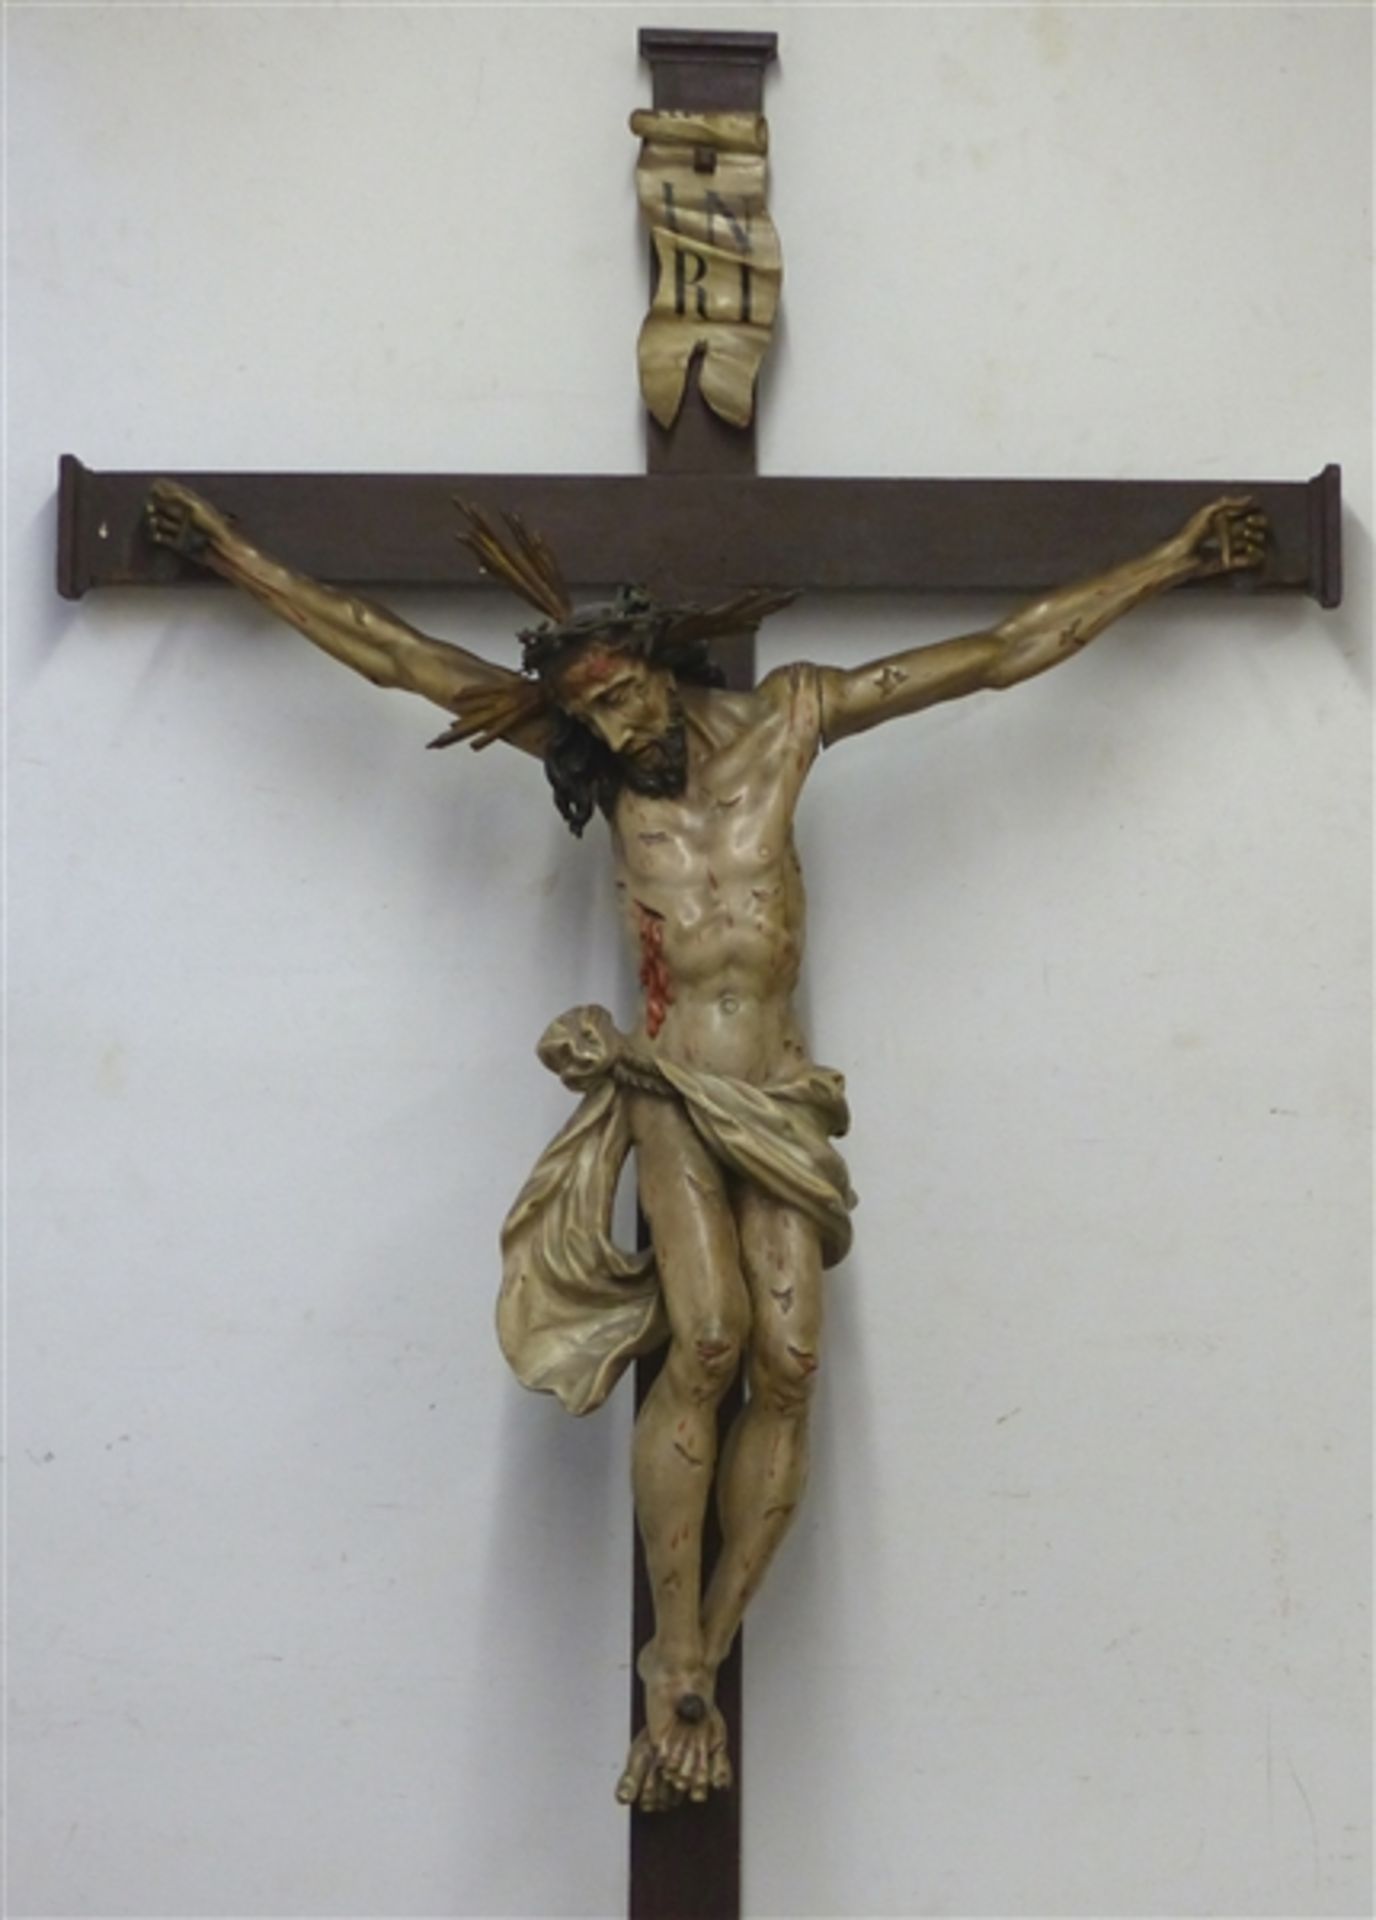 Holzkreuz mit Christusskulptur, Süddeutsch, frühes 19. Jh., gefasst, sehr gute Arbeit, Korpus 110 cm